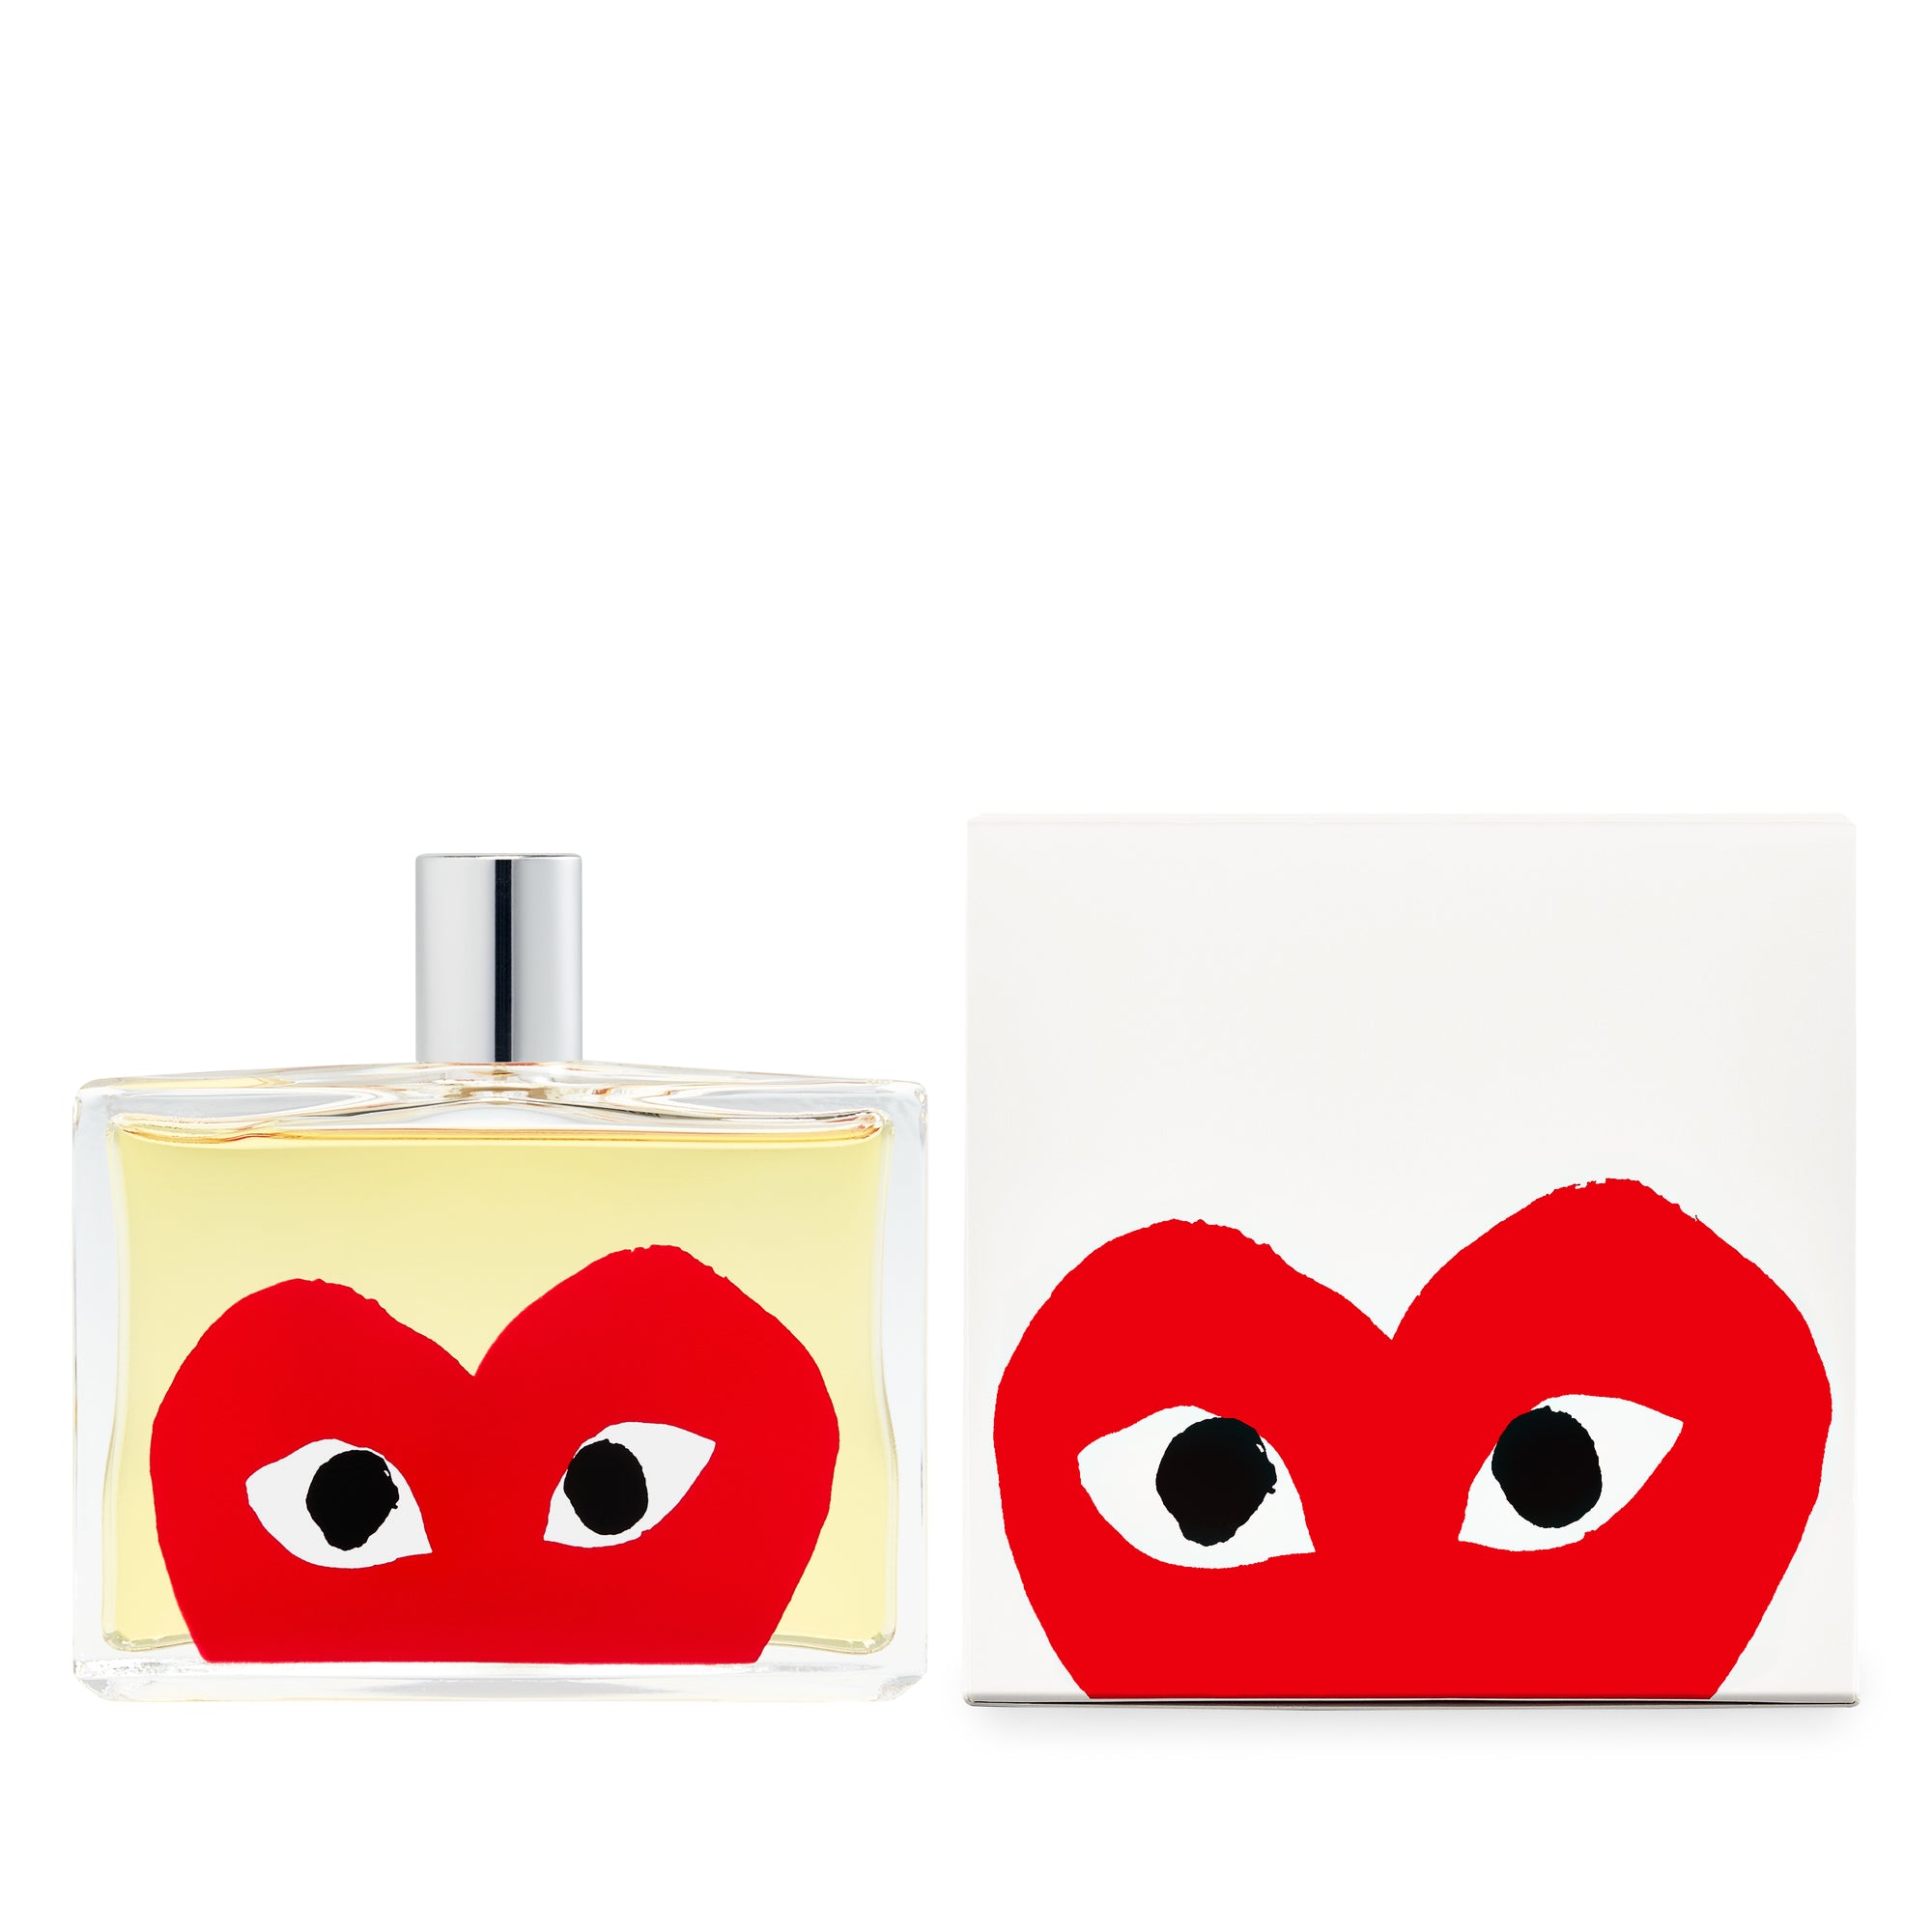 CDG Parfum -  PLAY Red Eau de Toilette view 2